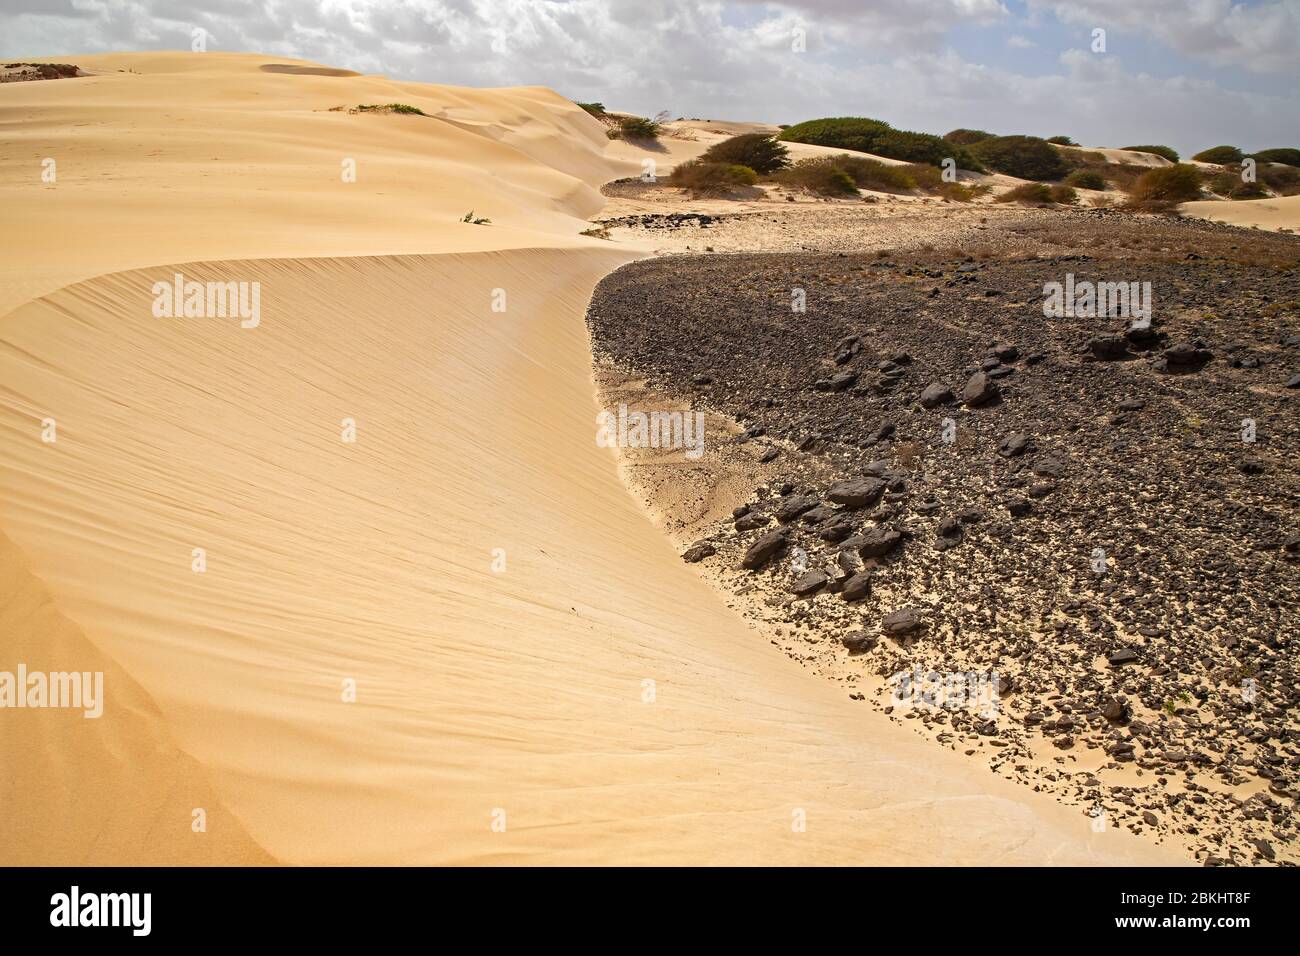 Dunes formed by blown in Sahara desert sand and volcanic rocks in the Deserto de Viana desert on the island of Boa Vista, Cape Verde / Cabo Verde Stock Photo